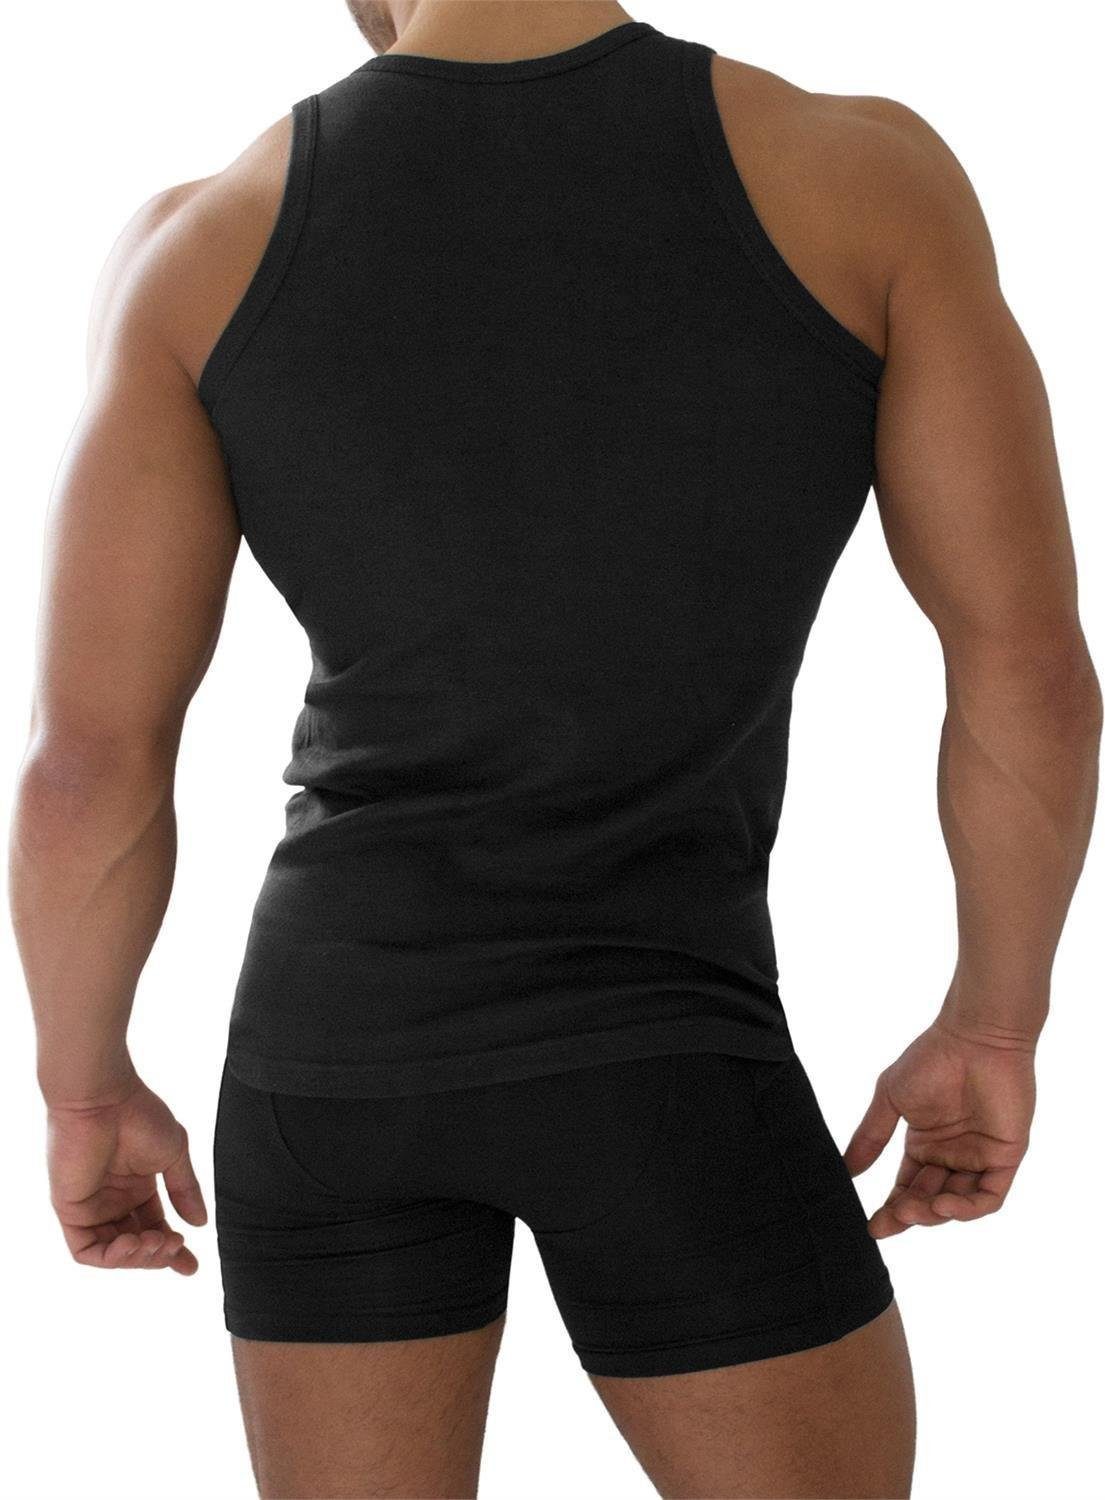 normani Unterhemd 4 Stück Herren-Unterhemd Feinripp Feinrippung Schwarz mit